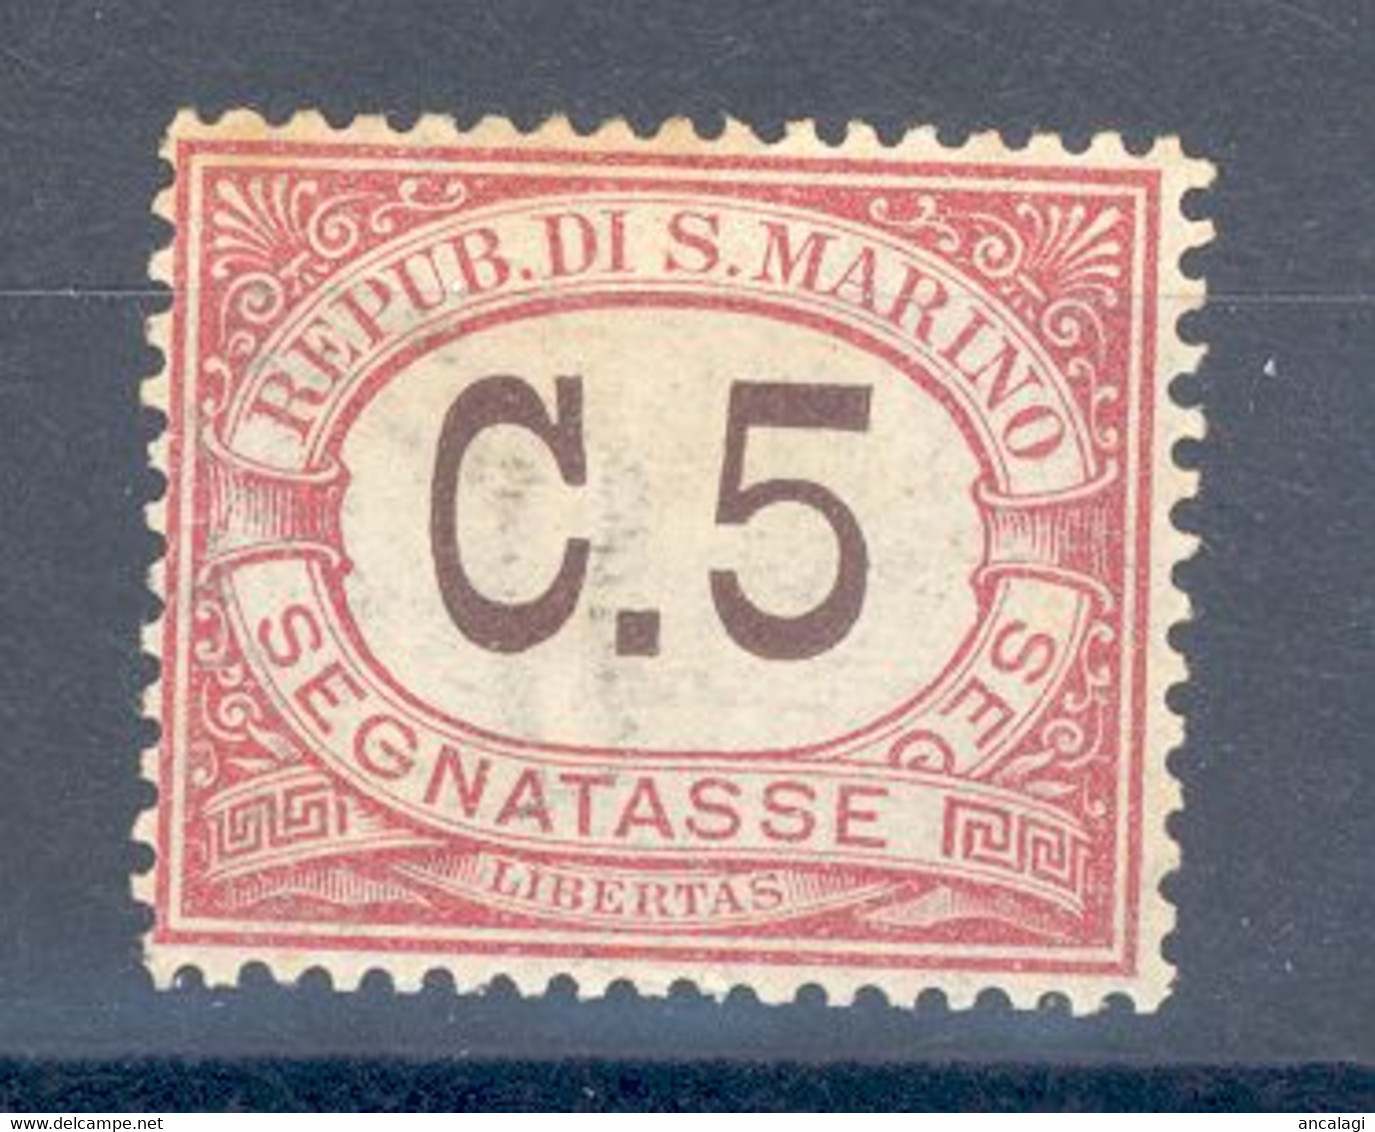 RSM F.lli Nuovi Segnatasse 006 - San Marino 1924 - 1v. C.5 - Segnatasse